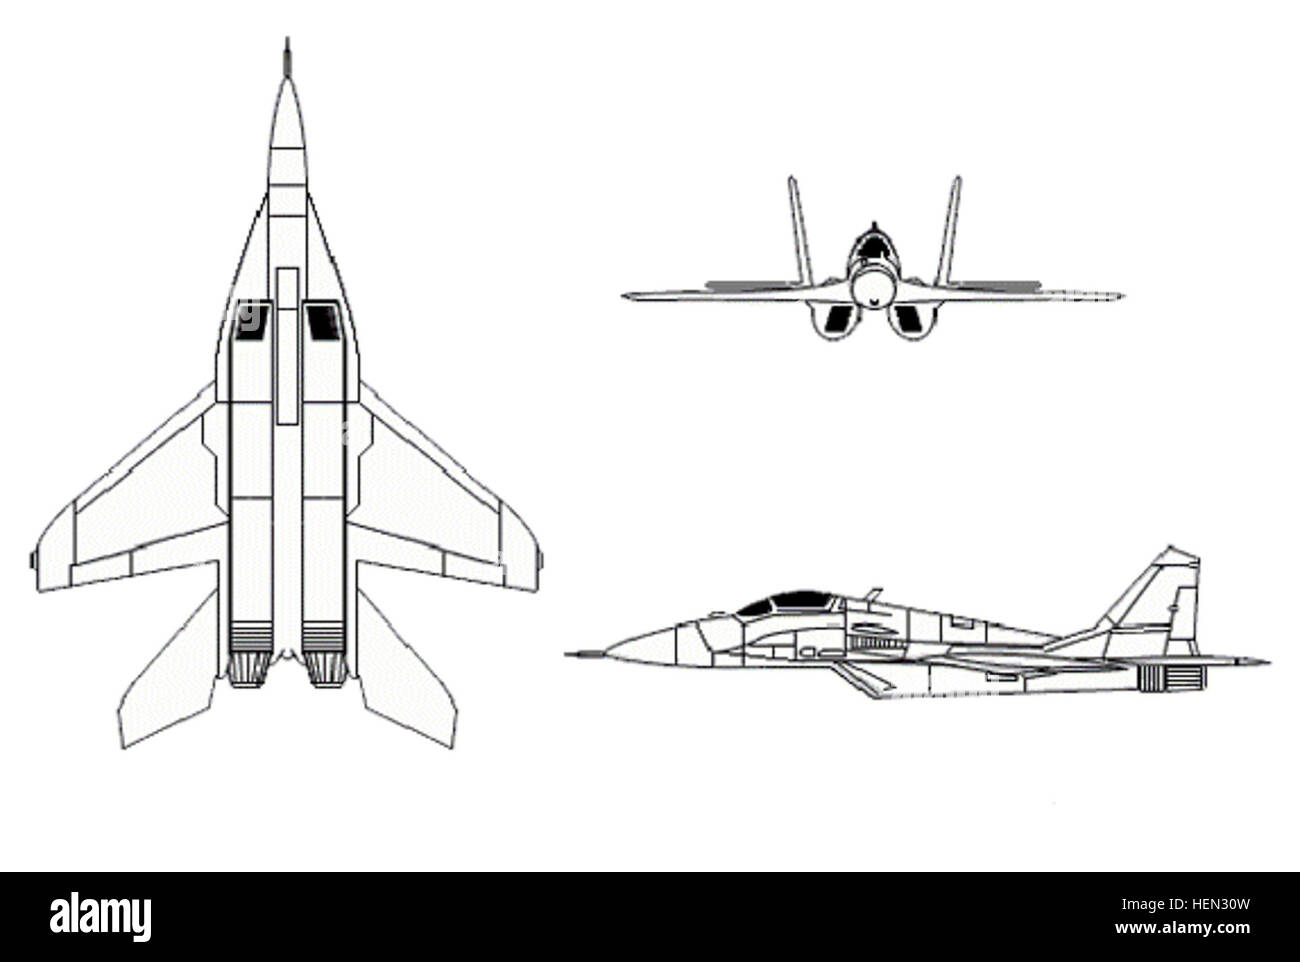 Миг-29 истребитель компоновка